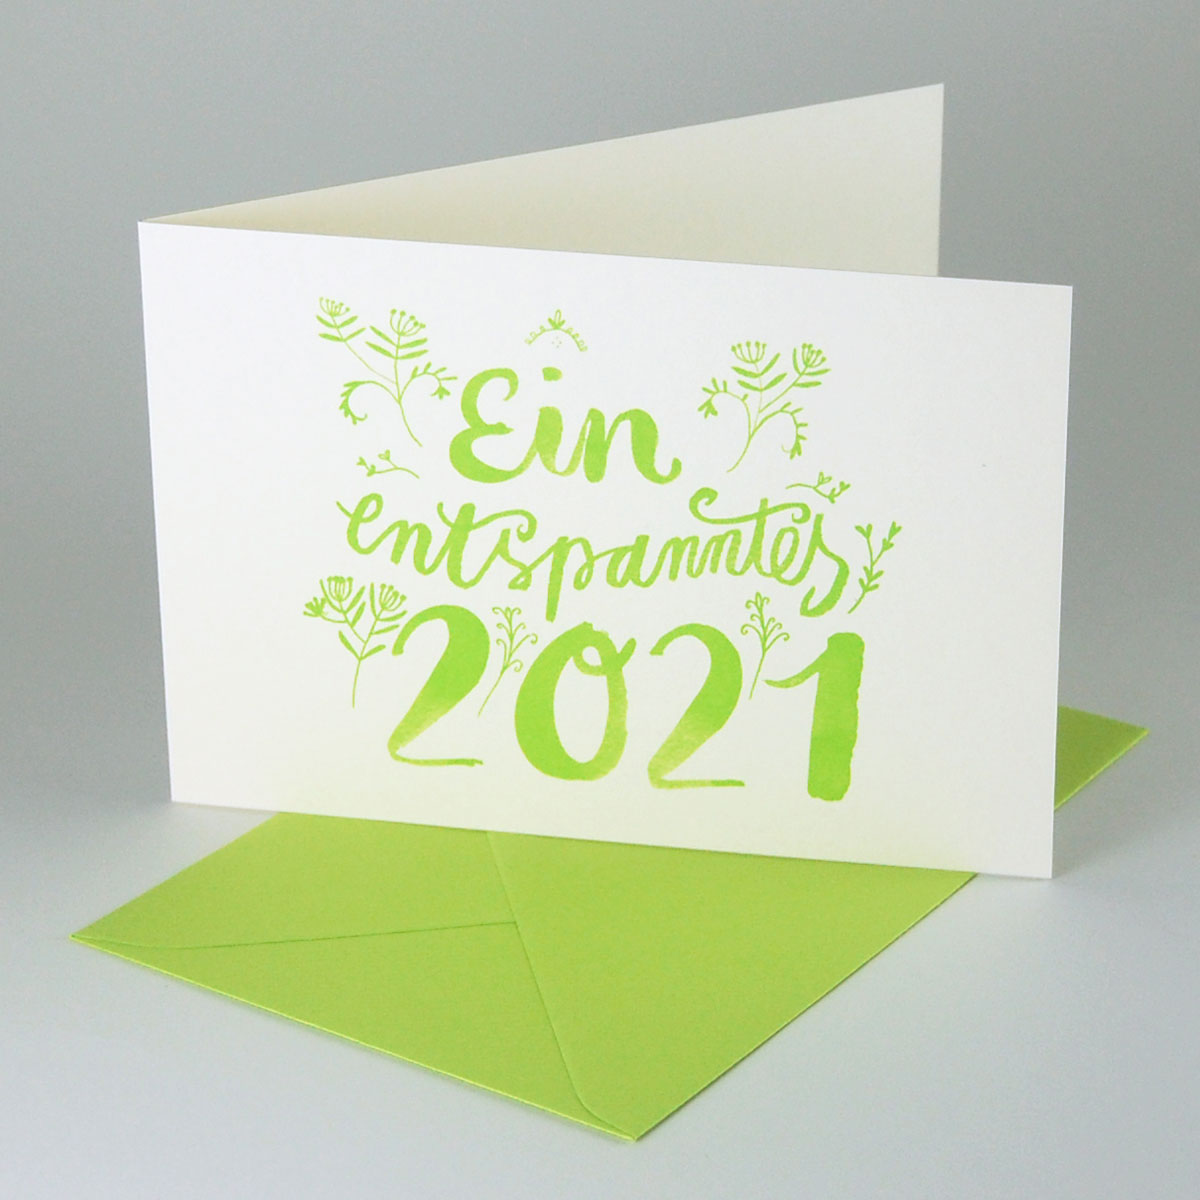 Ein entspanntes 2023, grün gedruckte Recycling-Neujahrskarten mit grünen Umschlägen